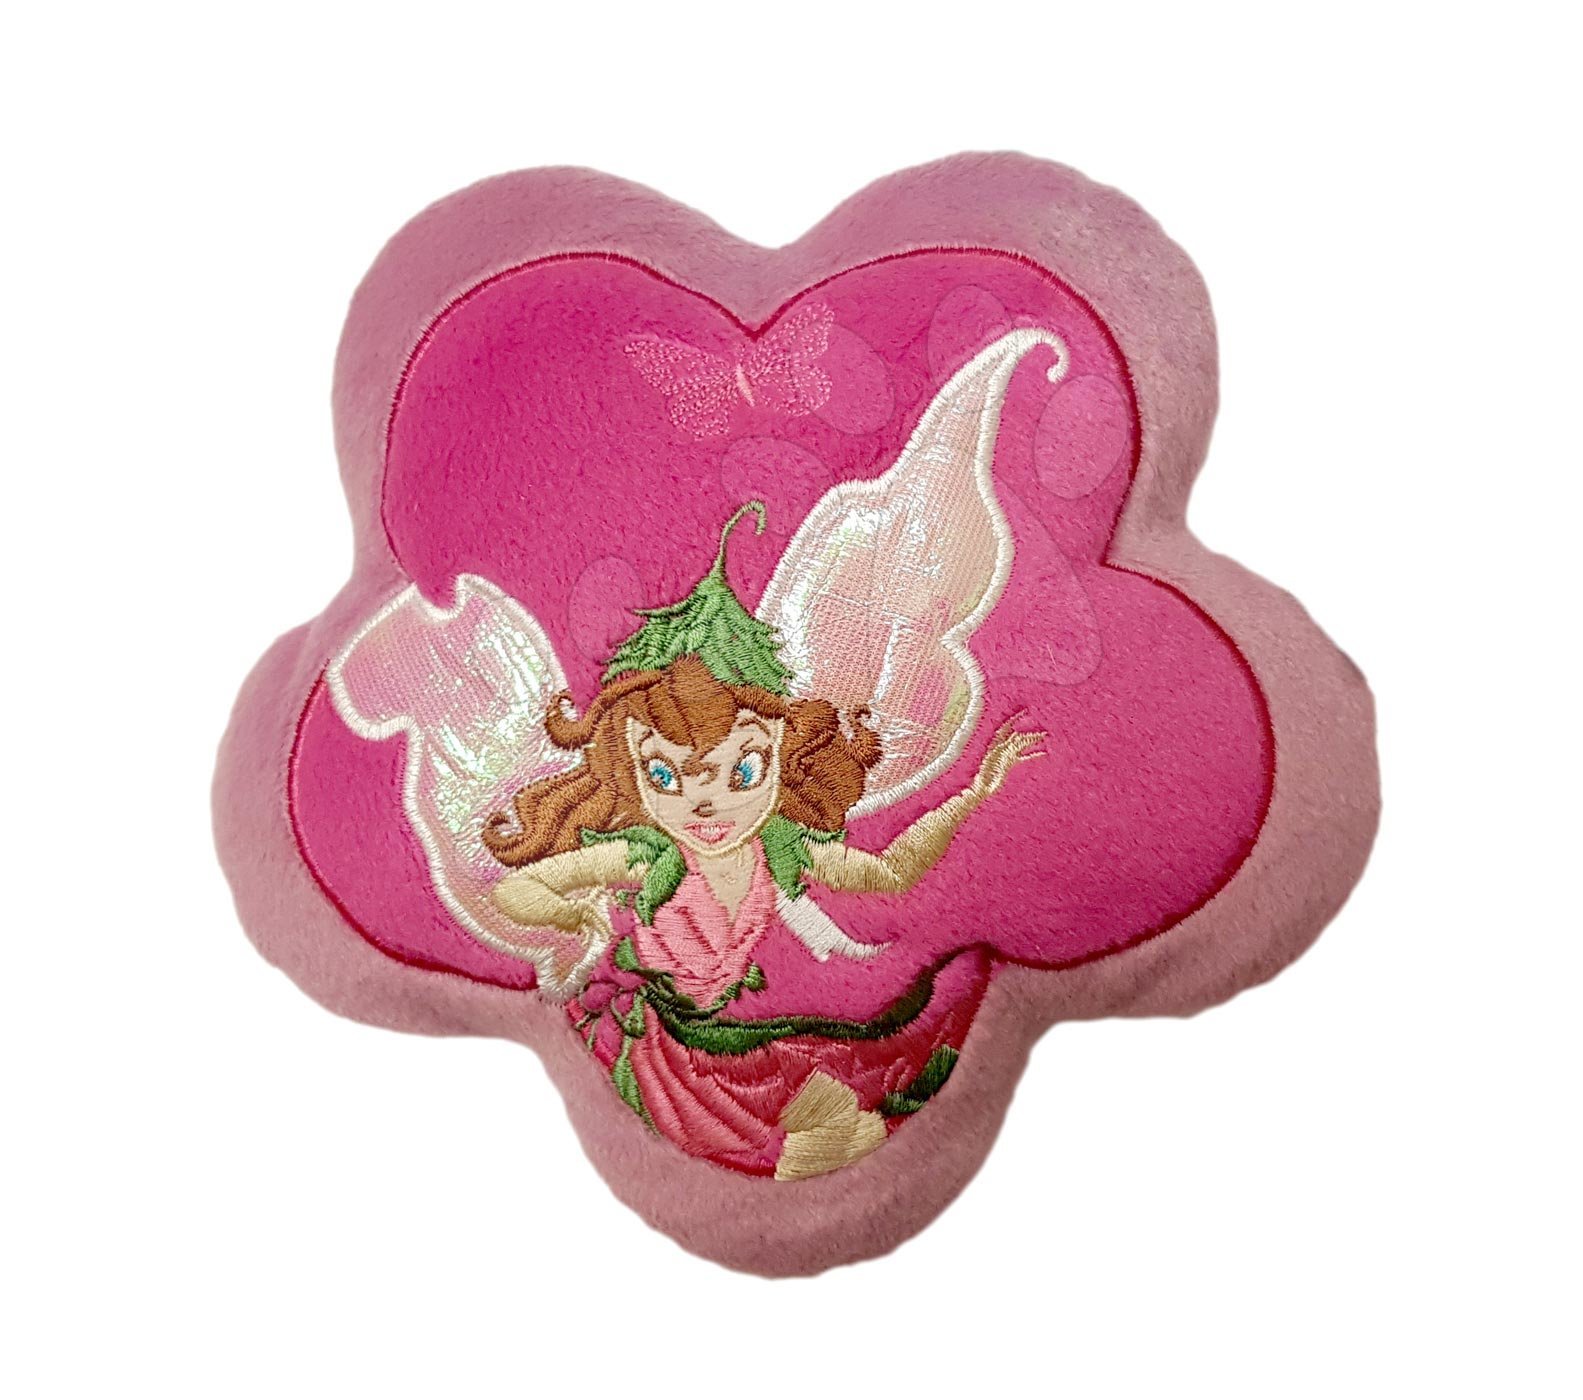 Plyšové polštáře - Polštářek Fairies ve tvaru květiny Ilanit růžový 18 cm průměr